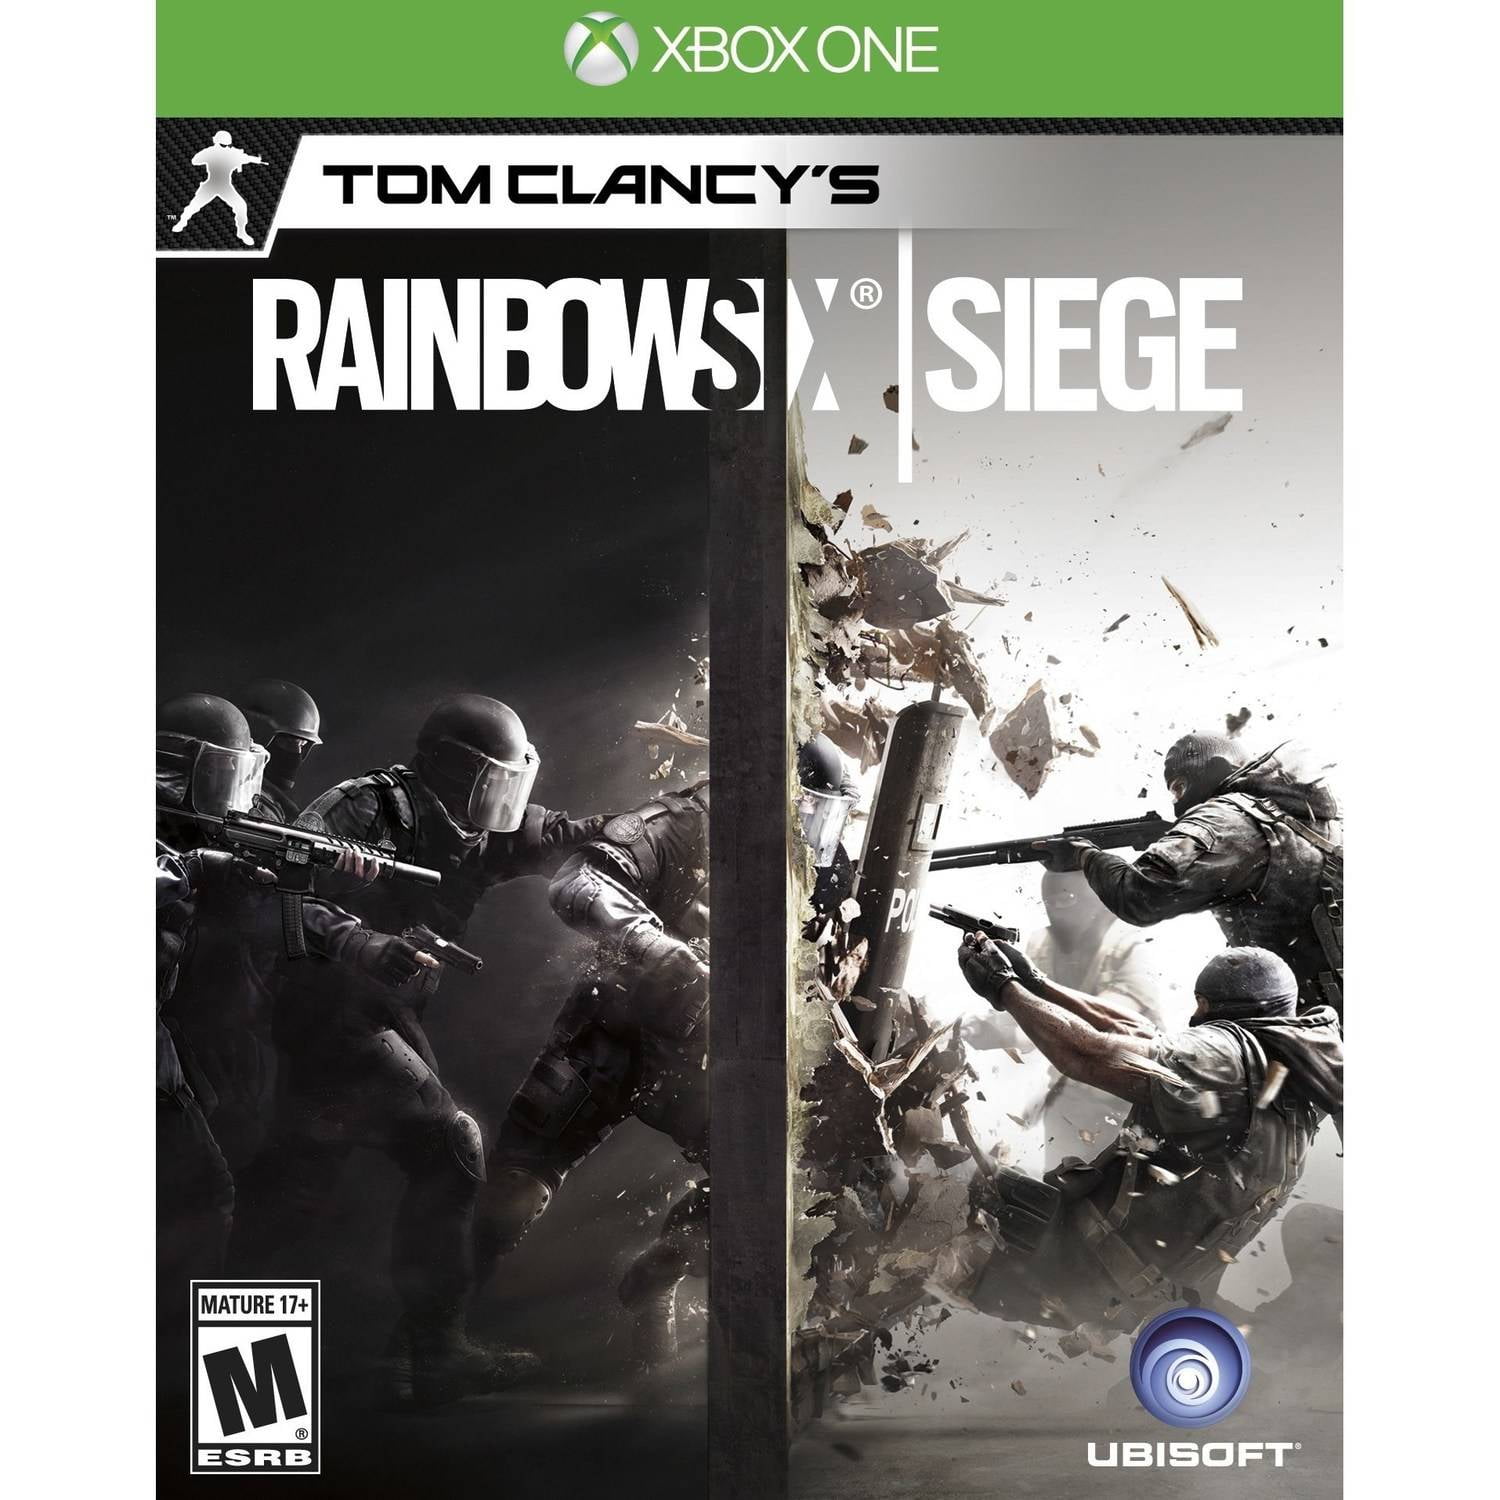 meten tent pijn doen Rainbow Six Siege (Xbox One) - Pre-Owned Ubisoft - Walmart.com